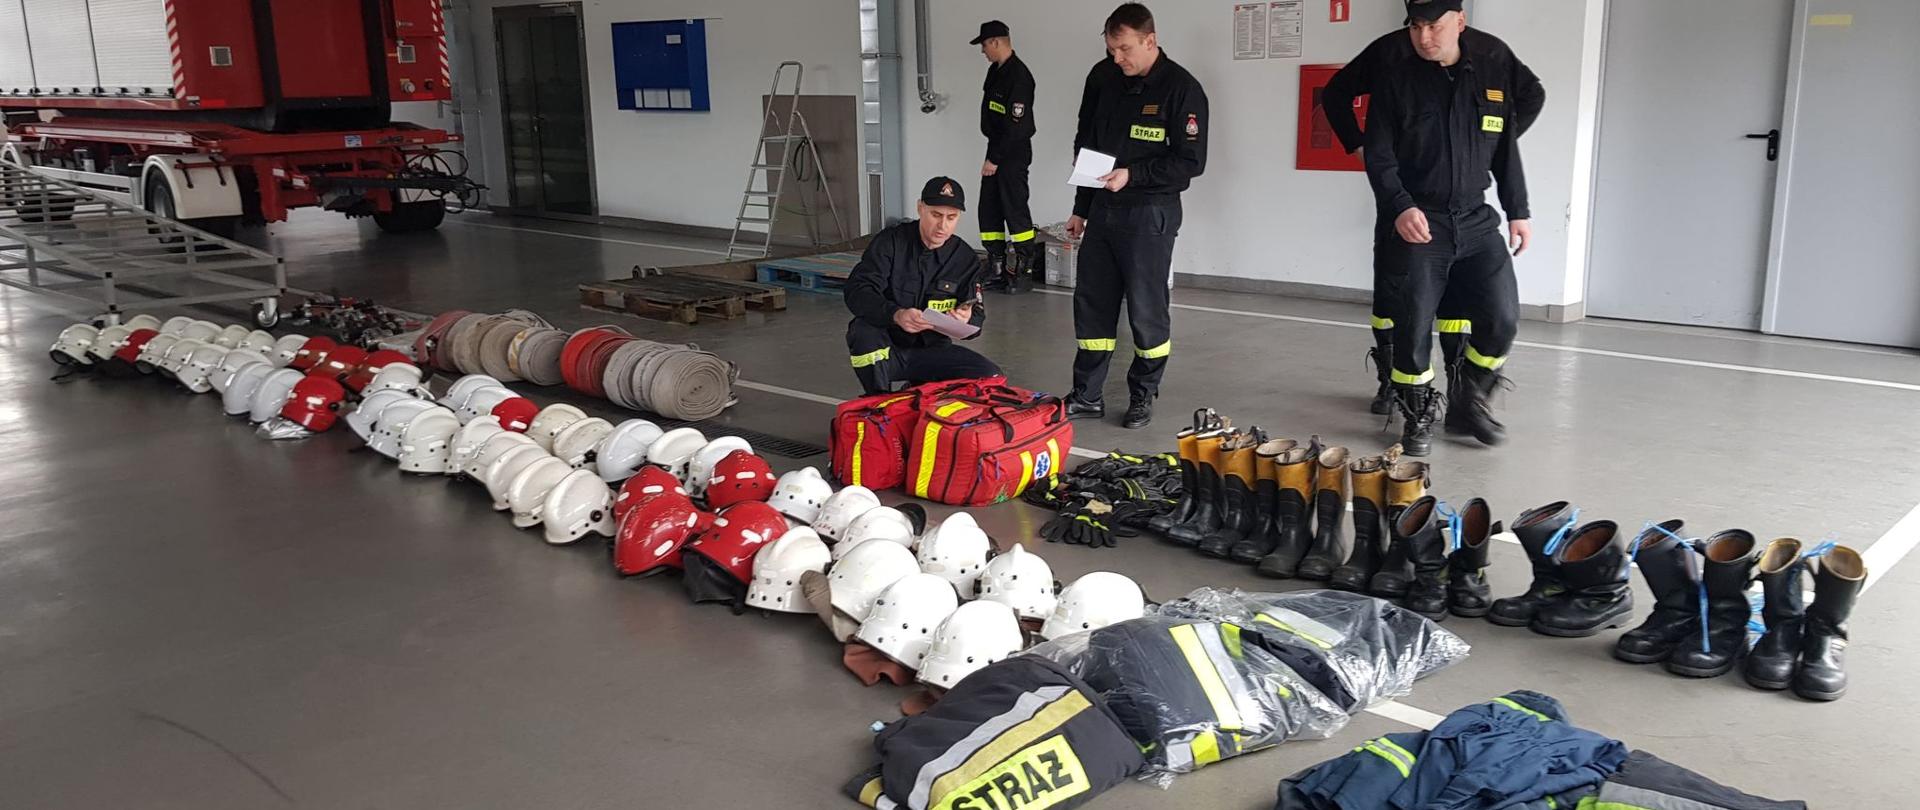 Na zdjęciu wyposażenie osobiste oraz sprzęt dla strażaków z Ukrainy. 